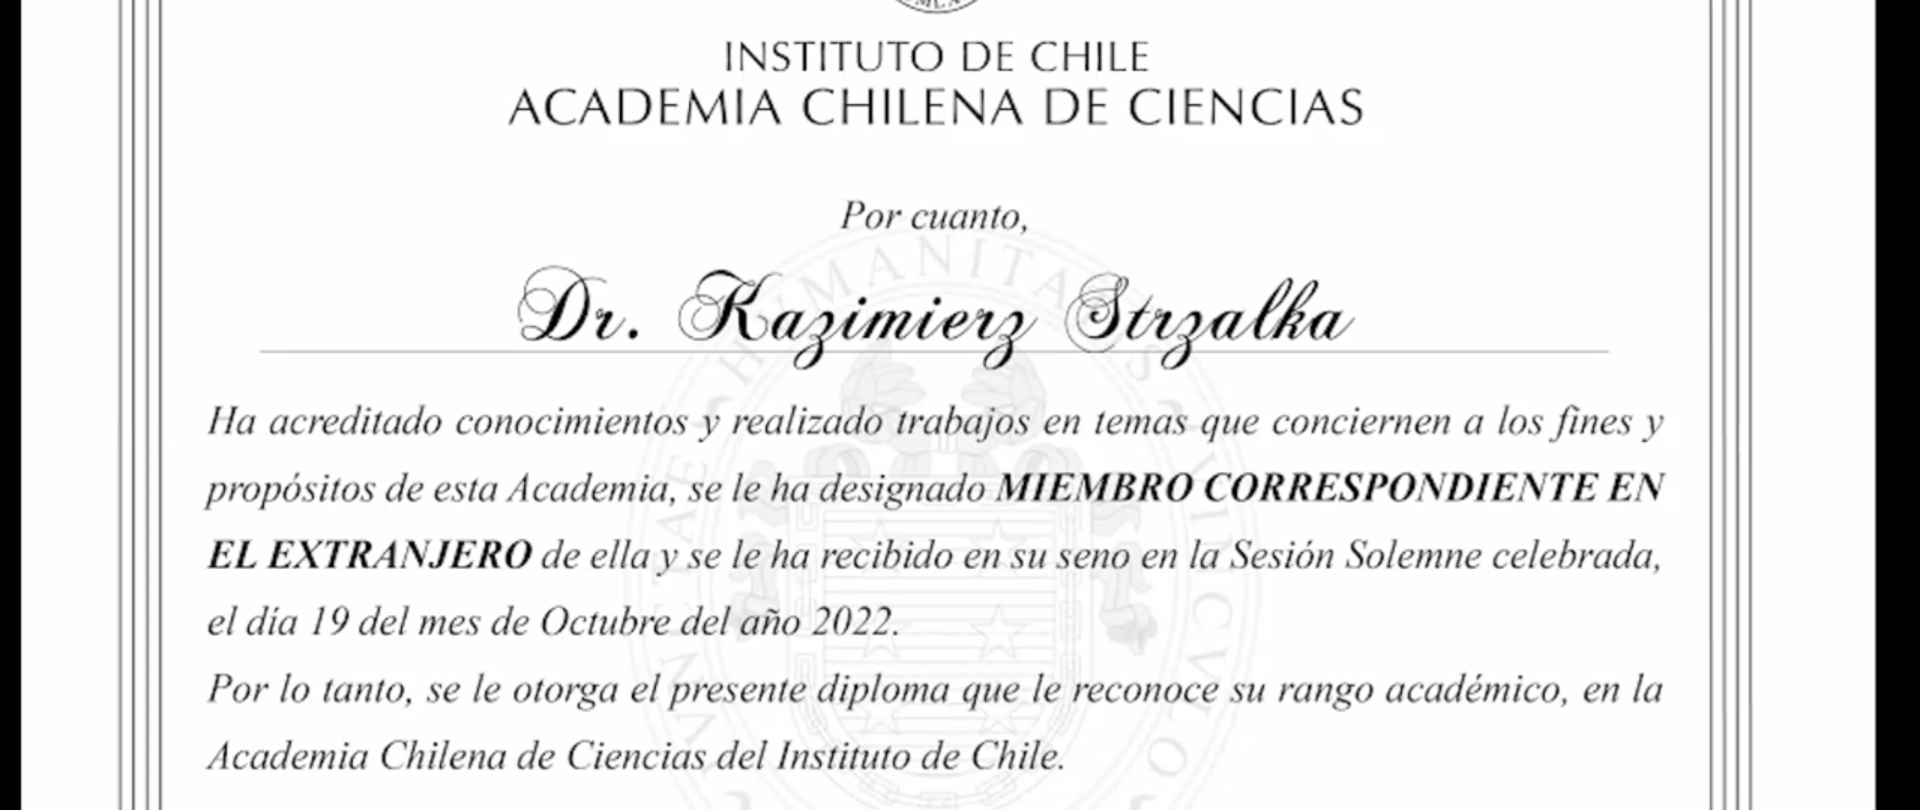 Profe. Kazimierz Strzałka ,el miembro correspondiente de la Academia de Ciencias de Chile